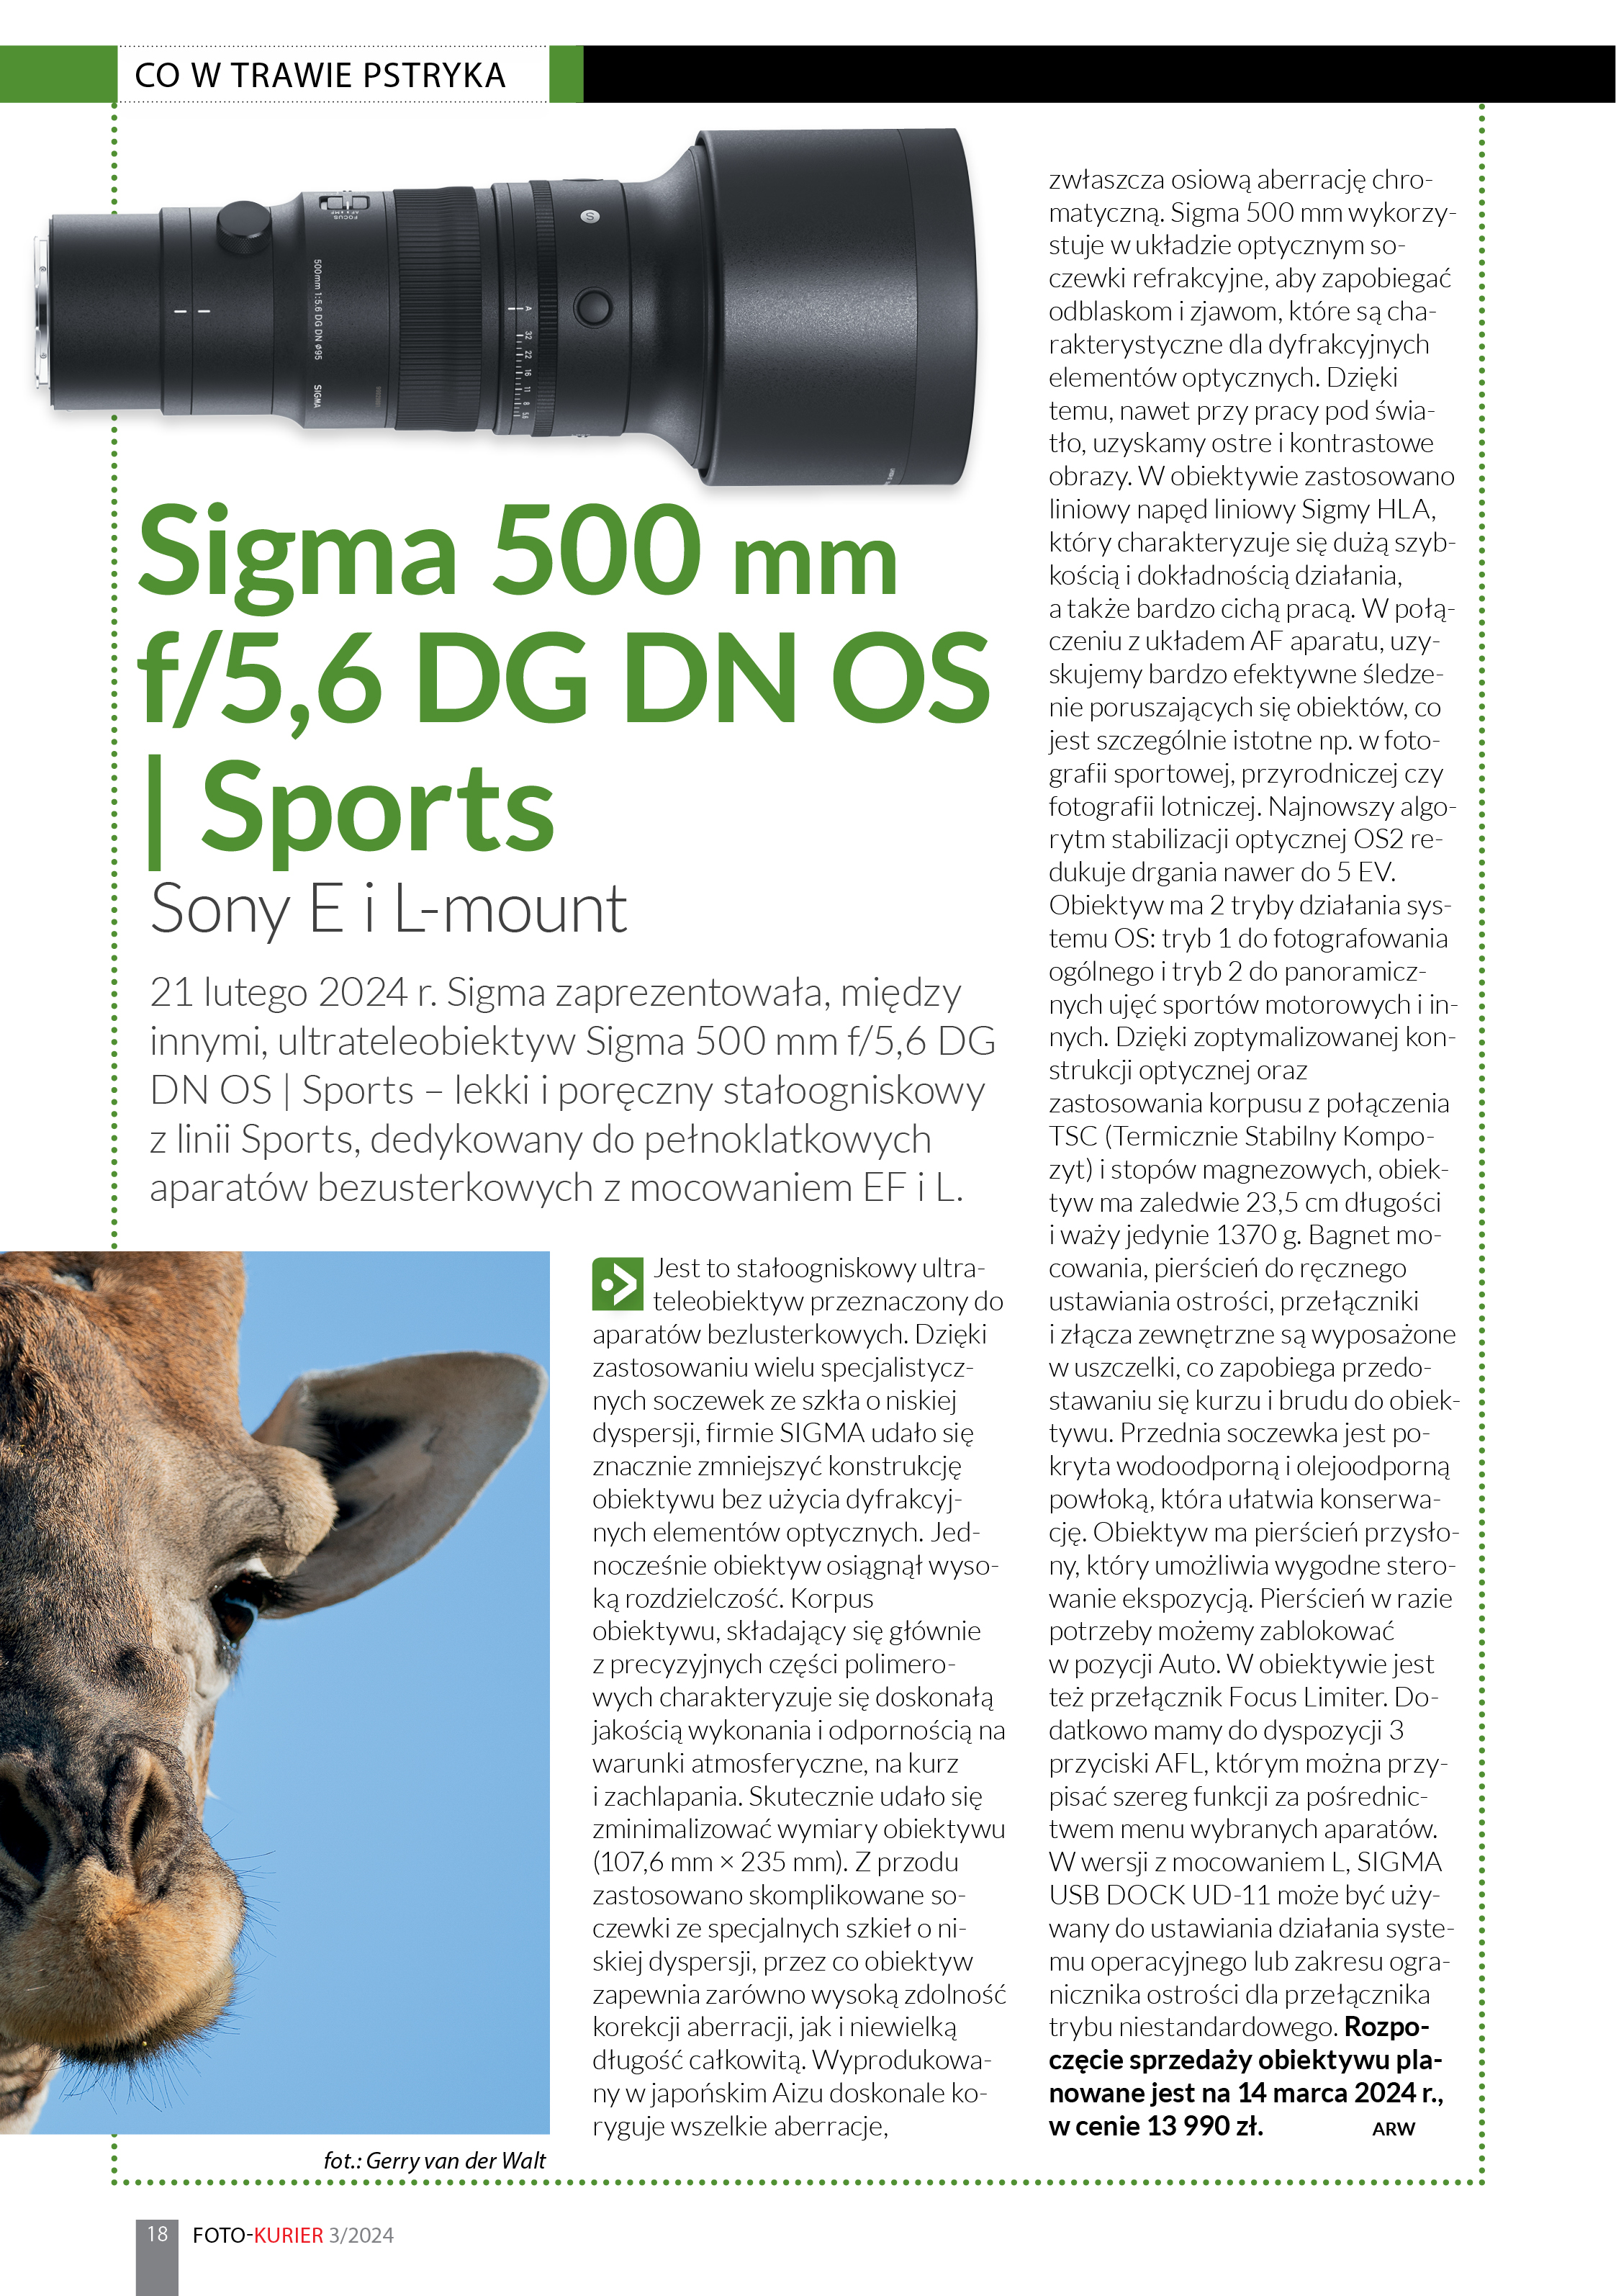 Sigma 500 mm F/5,6 DG DN OS | Sports